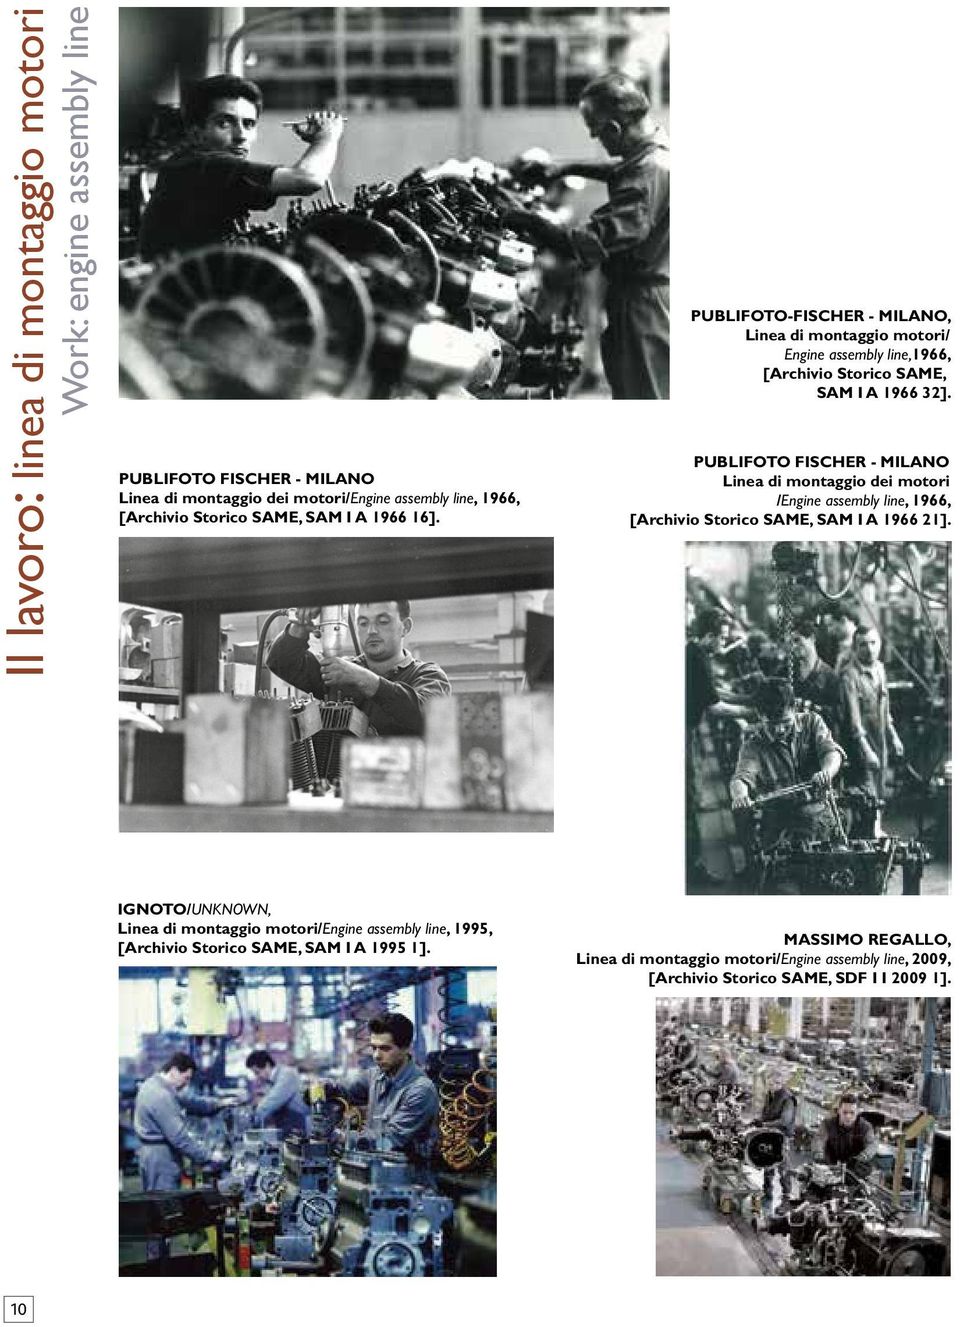 PUBLIFOTO FISCHER - MILANO Linea di montaggio dei motori /Engine assembly line, 1966, [Archivio Storico SAME, SAM I A 1966 21].